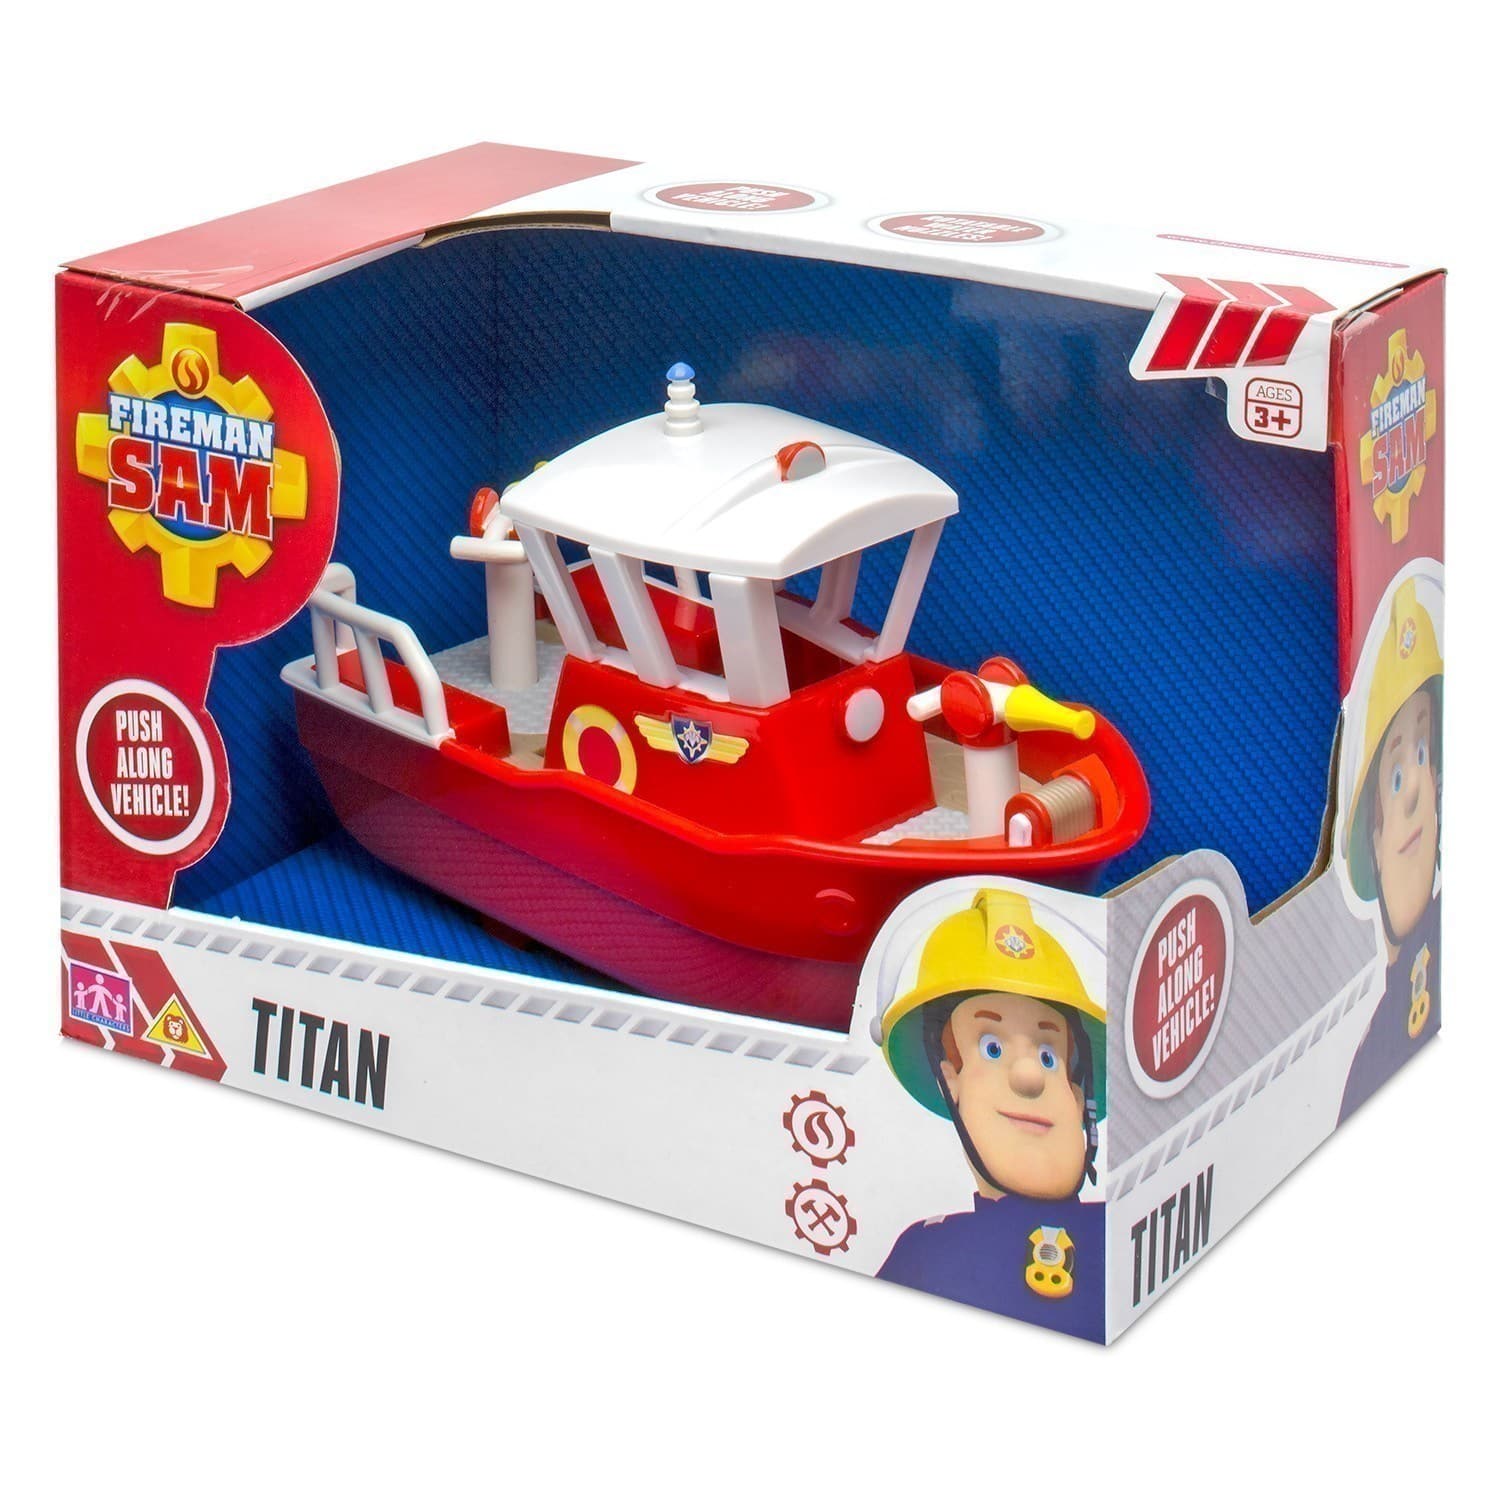 Fireman Sam - Titan Vehicle